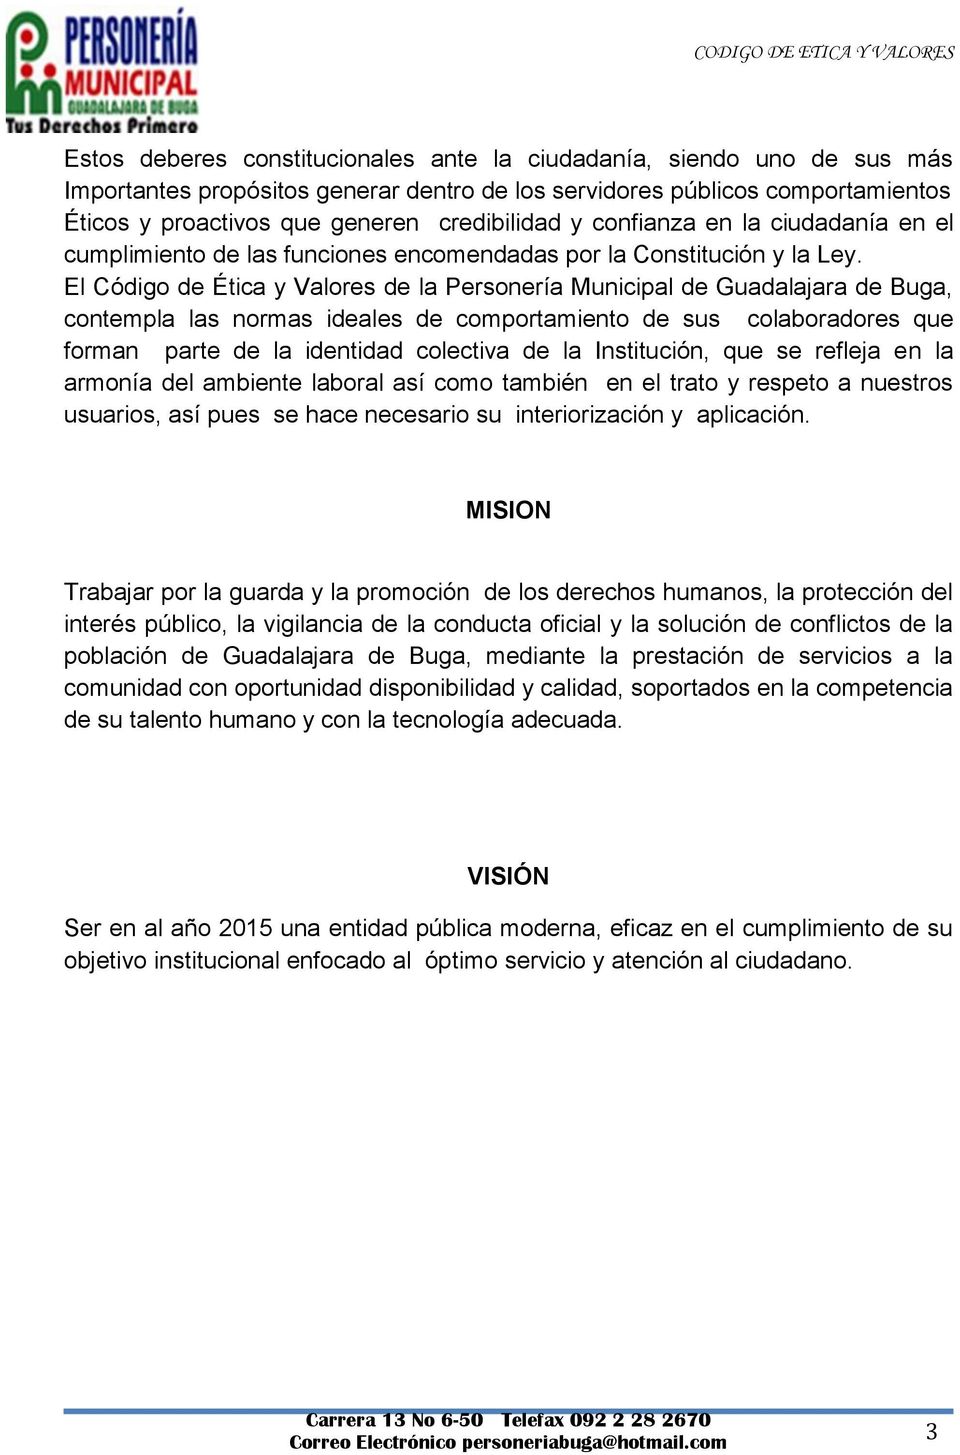 El Código de Ética y Valores de la Personería Municipal de Guadalajara de Buga, contempla las normas ideales de comportamiento de sus colaboradores que forman parte de la identidad colectiva de la